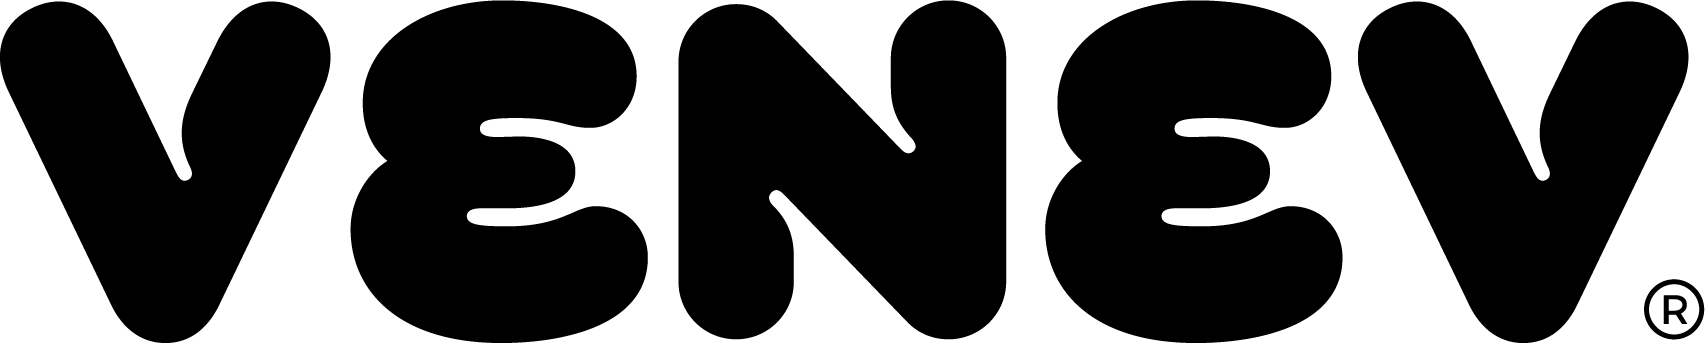 venev logo